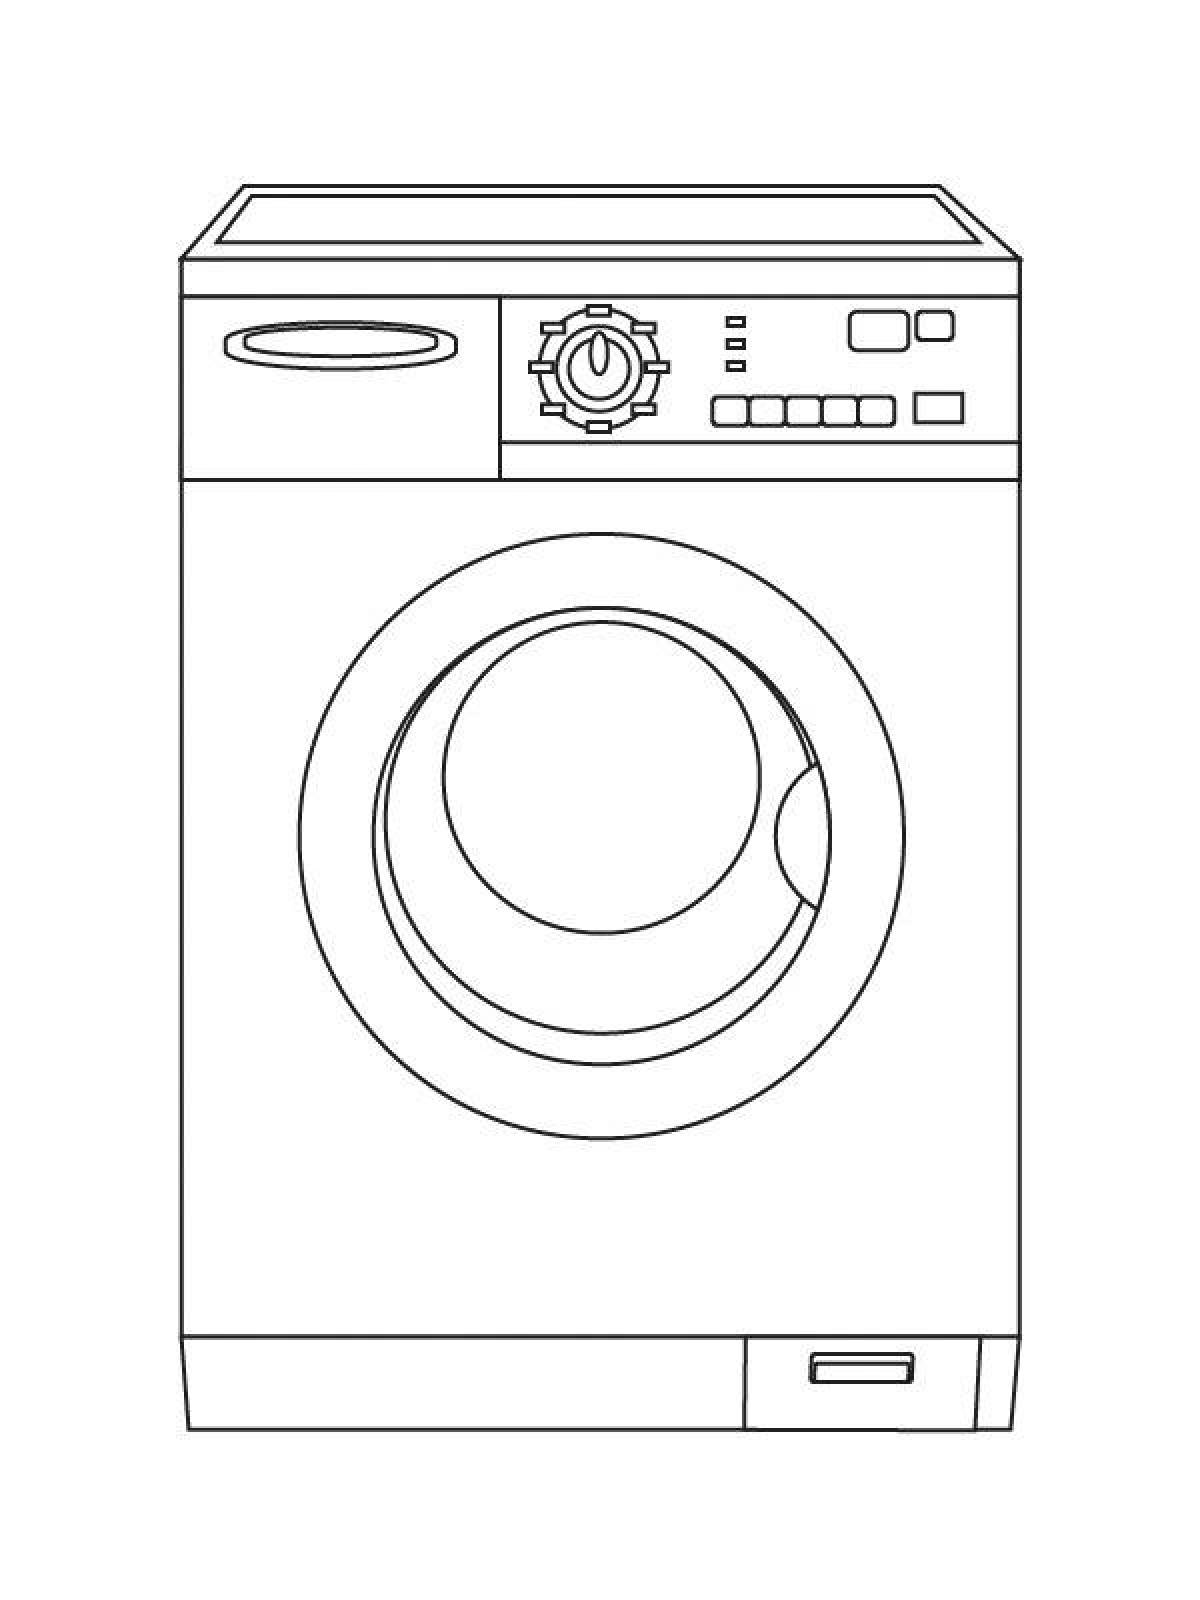 Распечатка стиральной машины